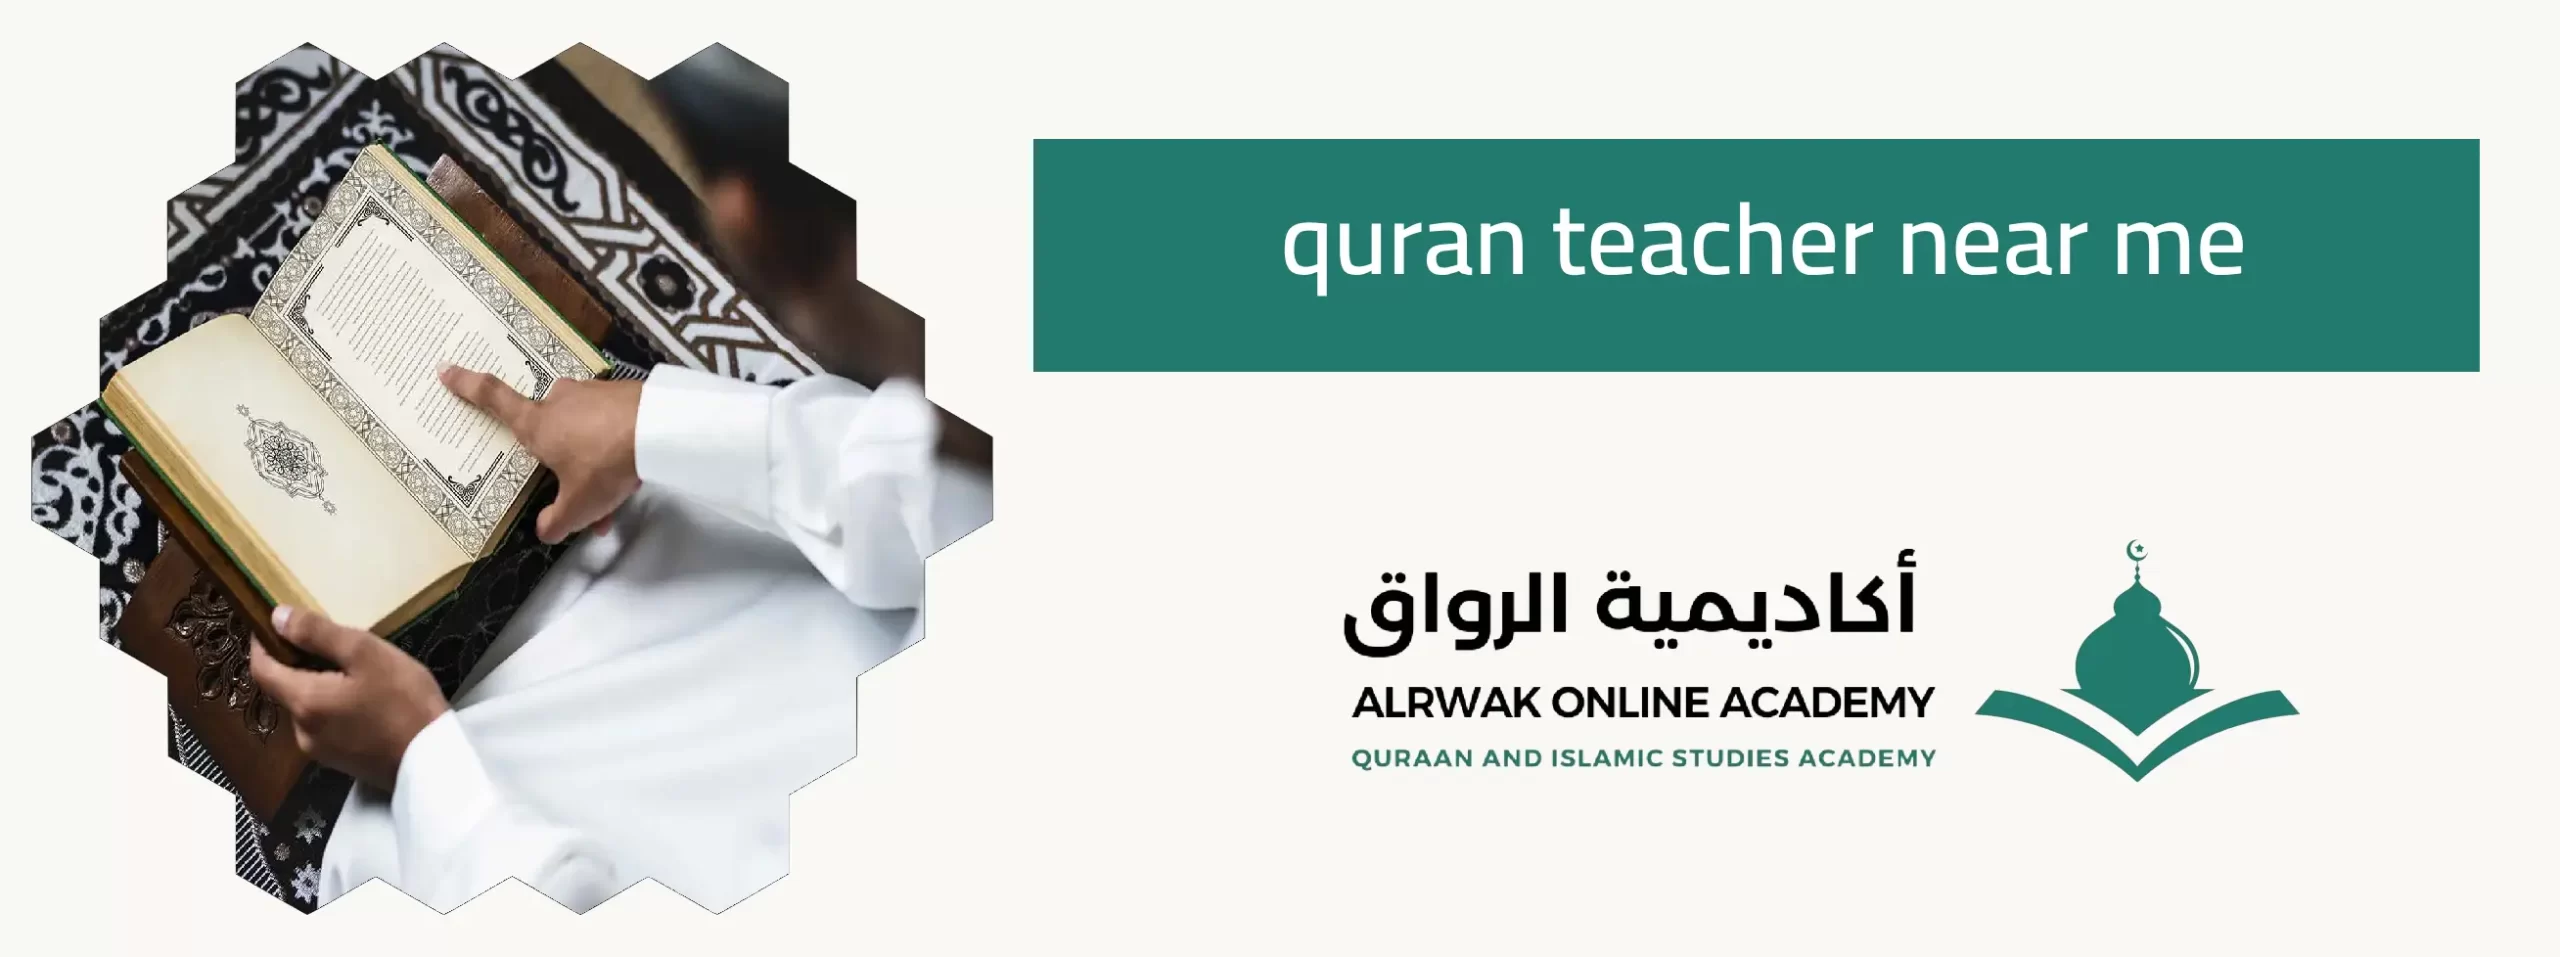 quran teacher